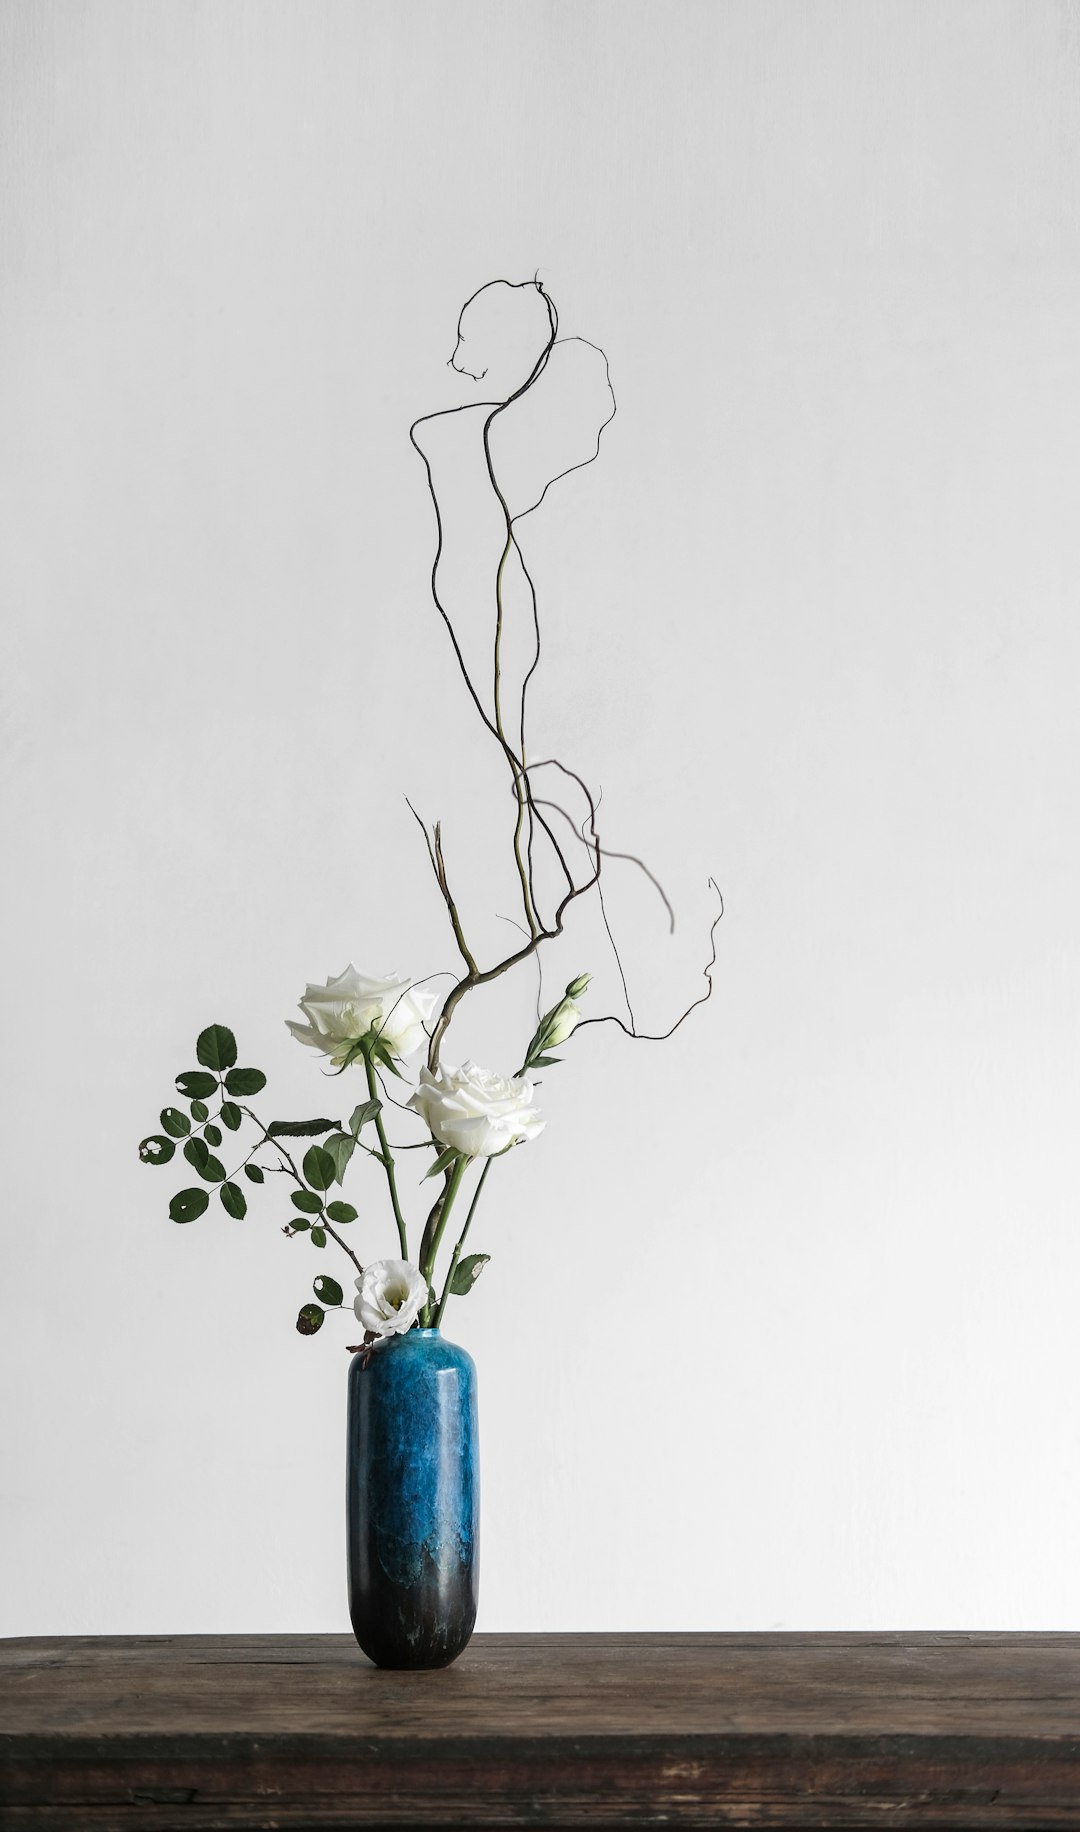 sunrose propagation, flower pot, white flowers in blue vase